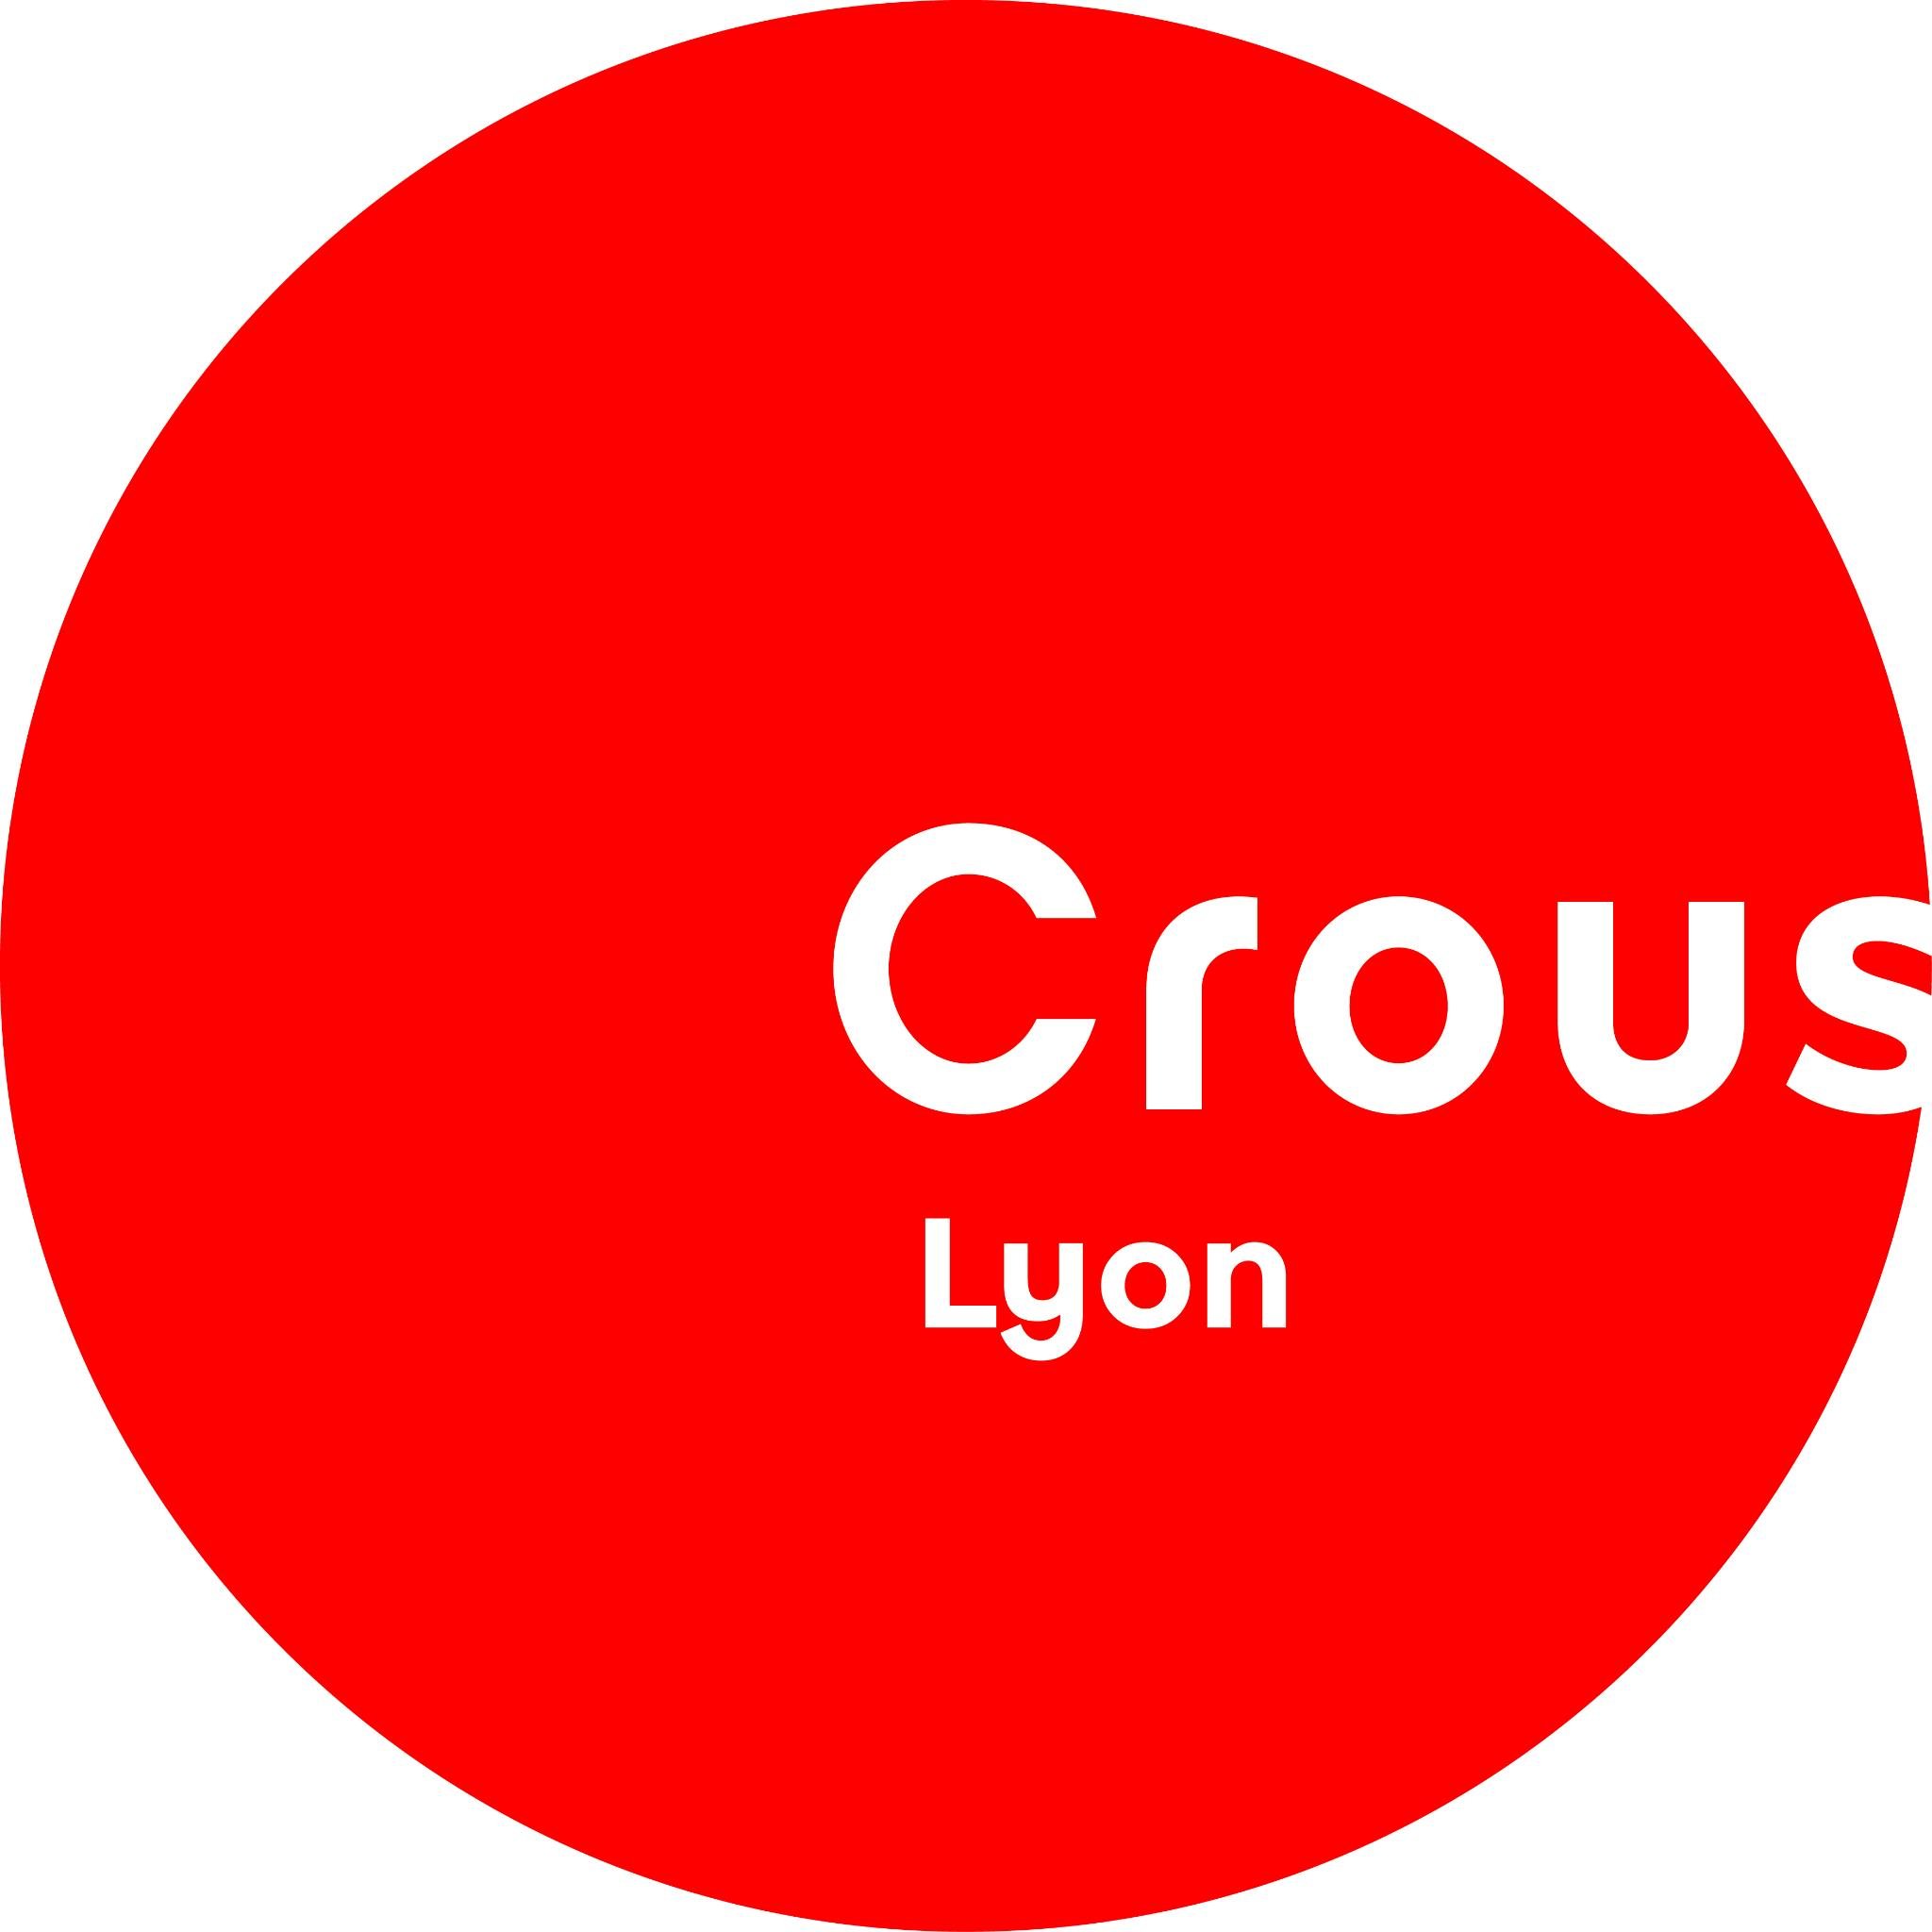 Bienvenue sur le compte du @CrousLyon. Toute l'actualité institutionnelle de l'établissement.